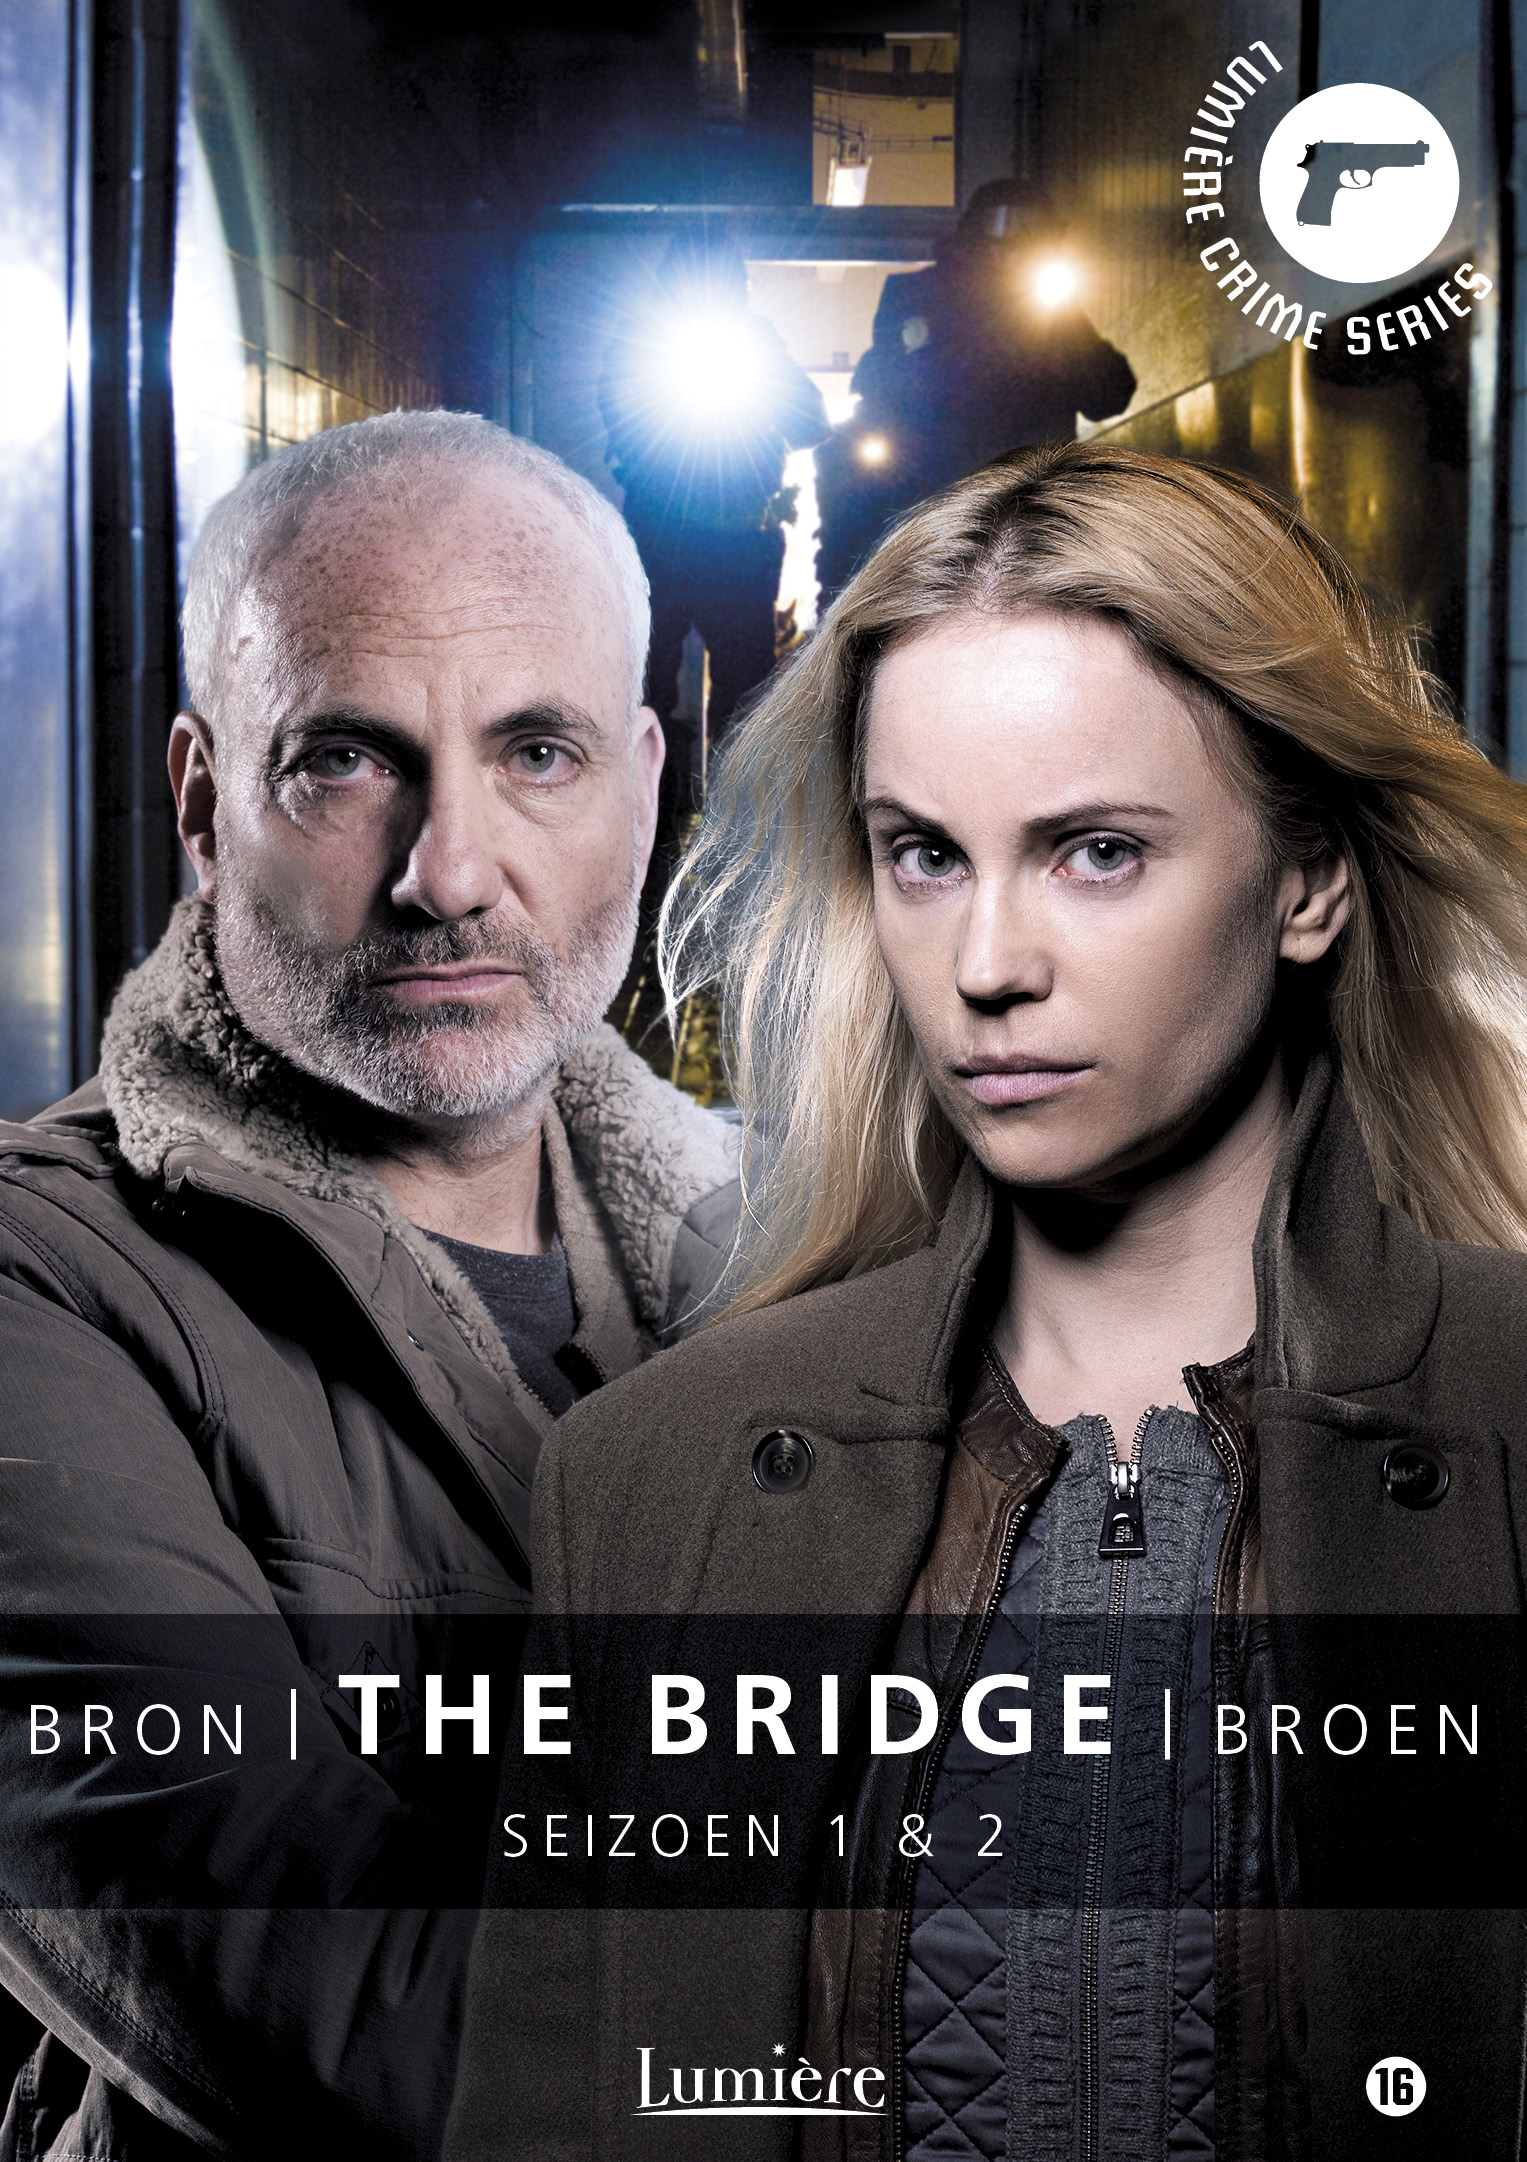 THE BRIDGE seizoen 2